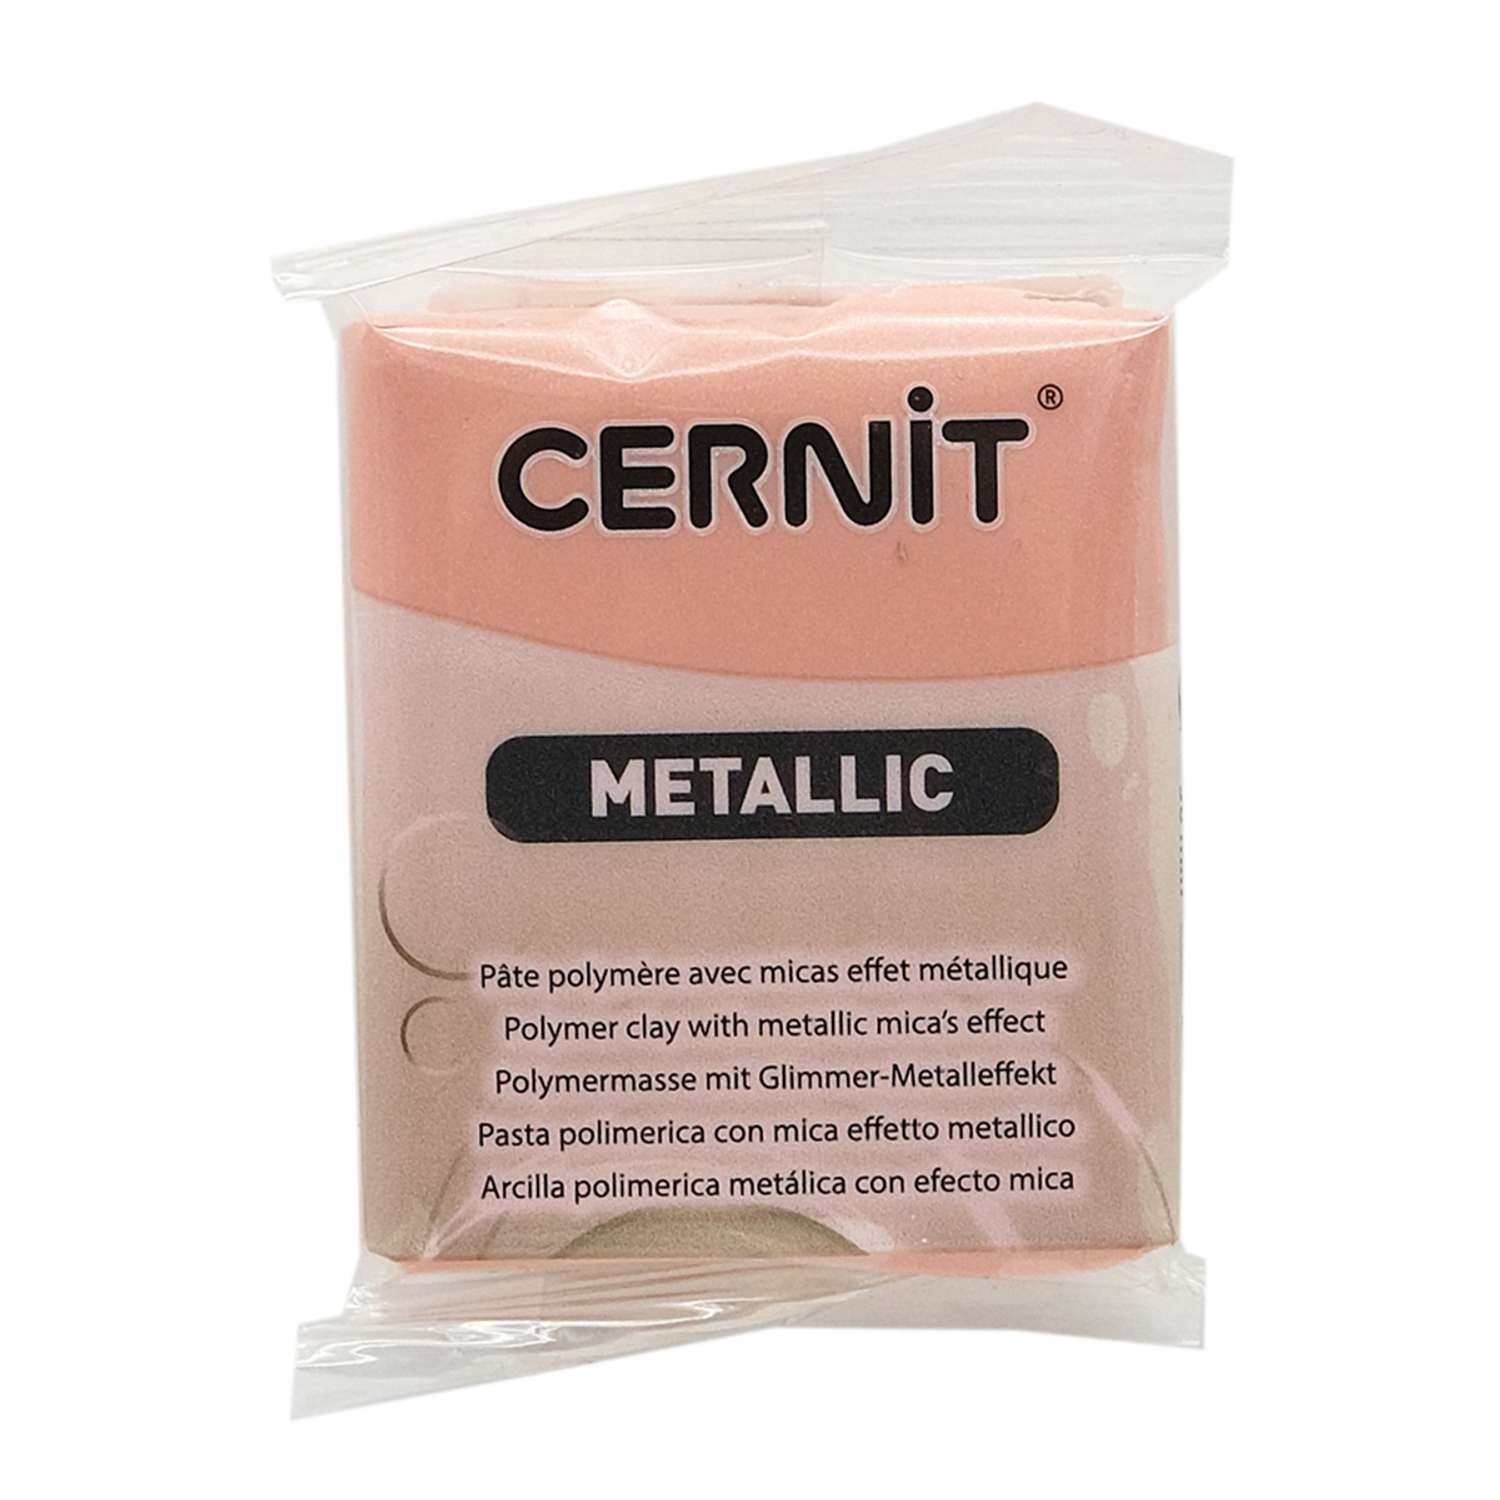 Полимерная глина Cernit пластика запекаемая Цернит metallic 56 гр CE0870059 - фото 7